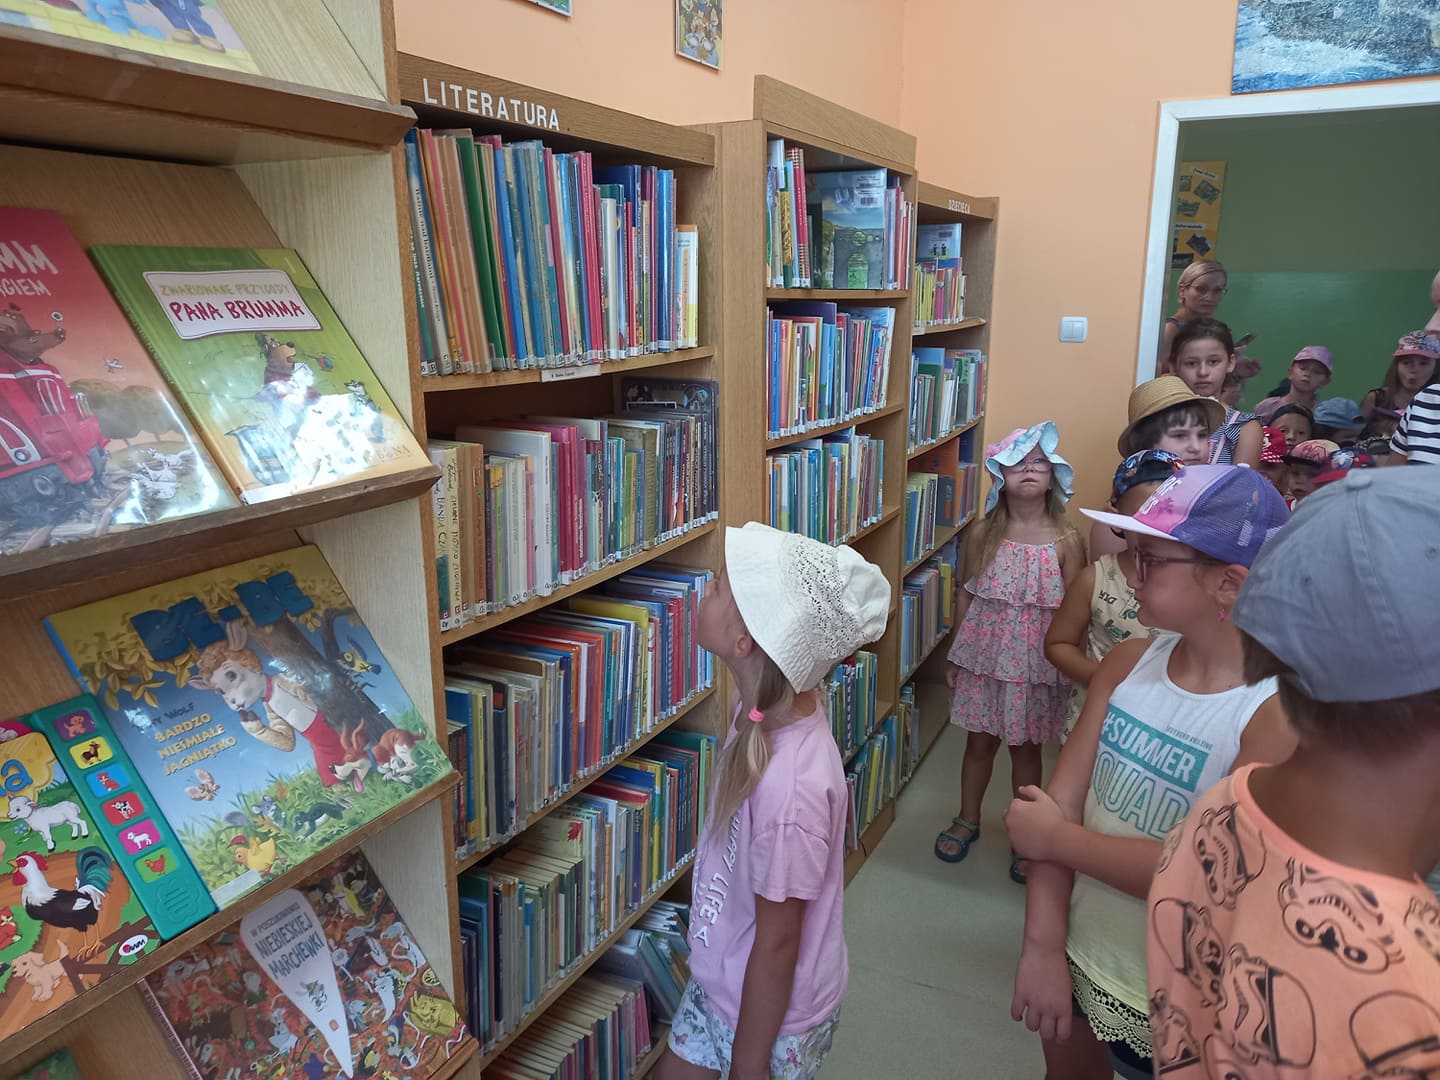 Grupa dzieci w bibliotece wybiera książki z regałów.